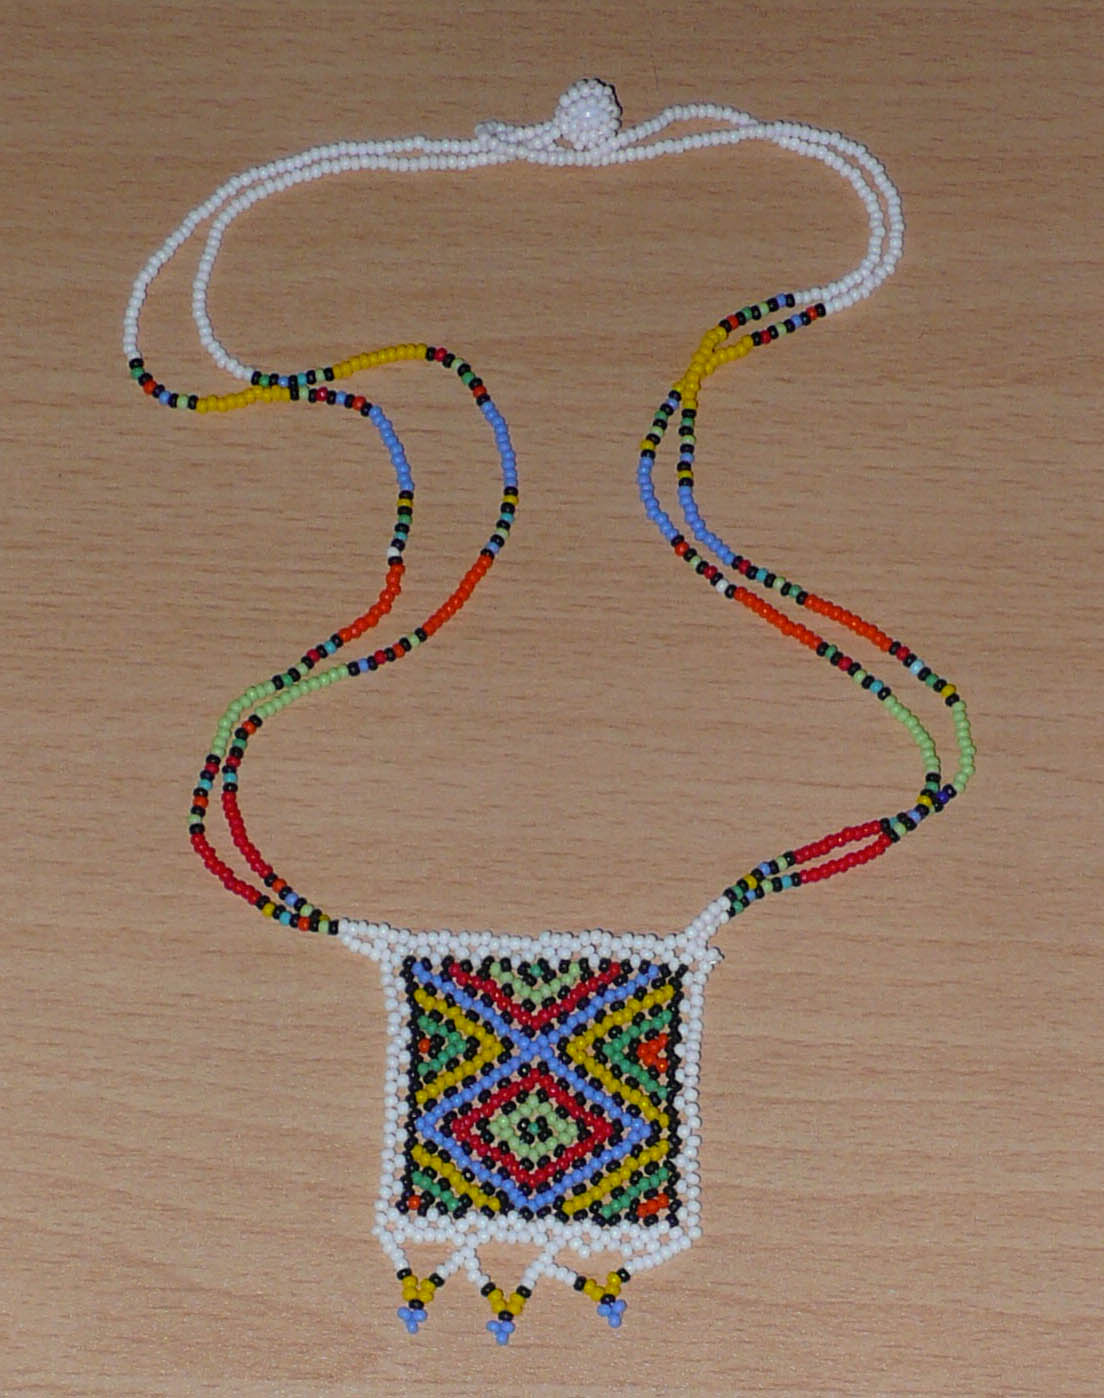 Collier africain traditionnel orné d'un pendentif décoré de motifs ethniques sud-africains ; il se compose d'un tissage de perles de rocaille blanches et multicolores et s'attache avec un fermoir à boule.  Ce collier mesure 28,5 cm de long (de la nuque au pendentif), la longueur de chaîne autour du cou est de 50 cm ; le pendentif carré orné d'une frise perlée mesure 5,5 cm sur 4,5 cm.